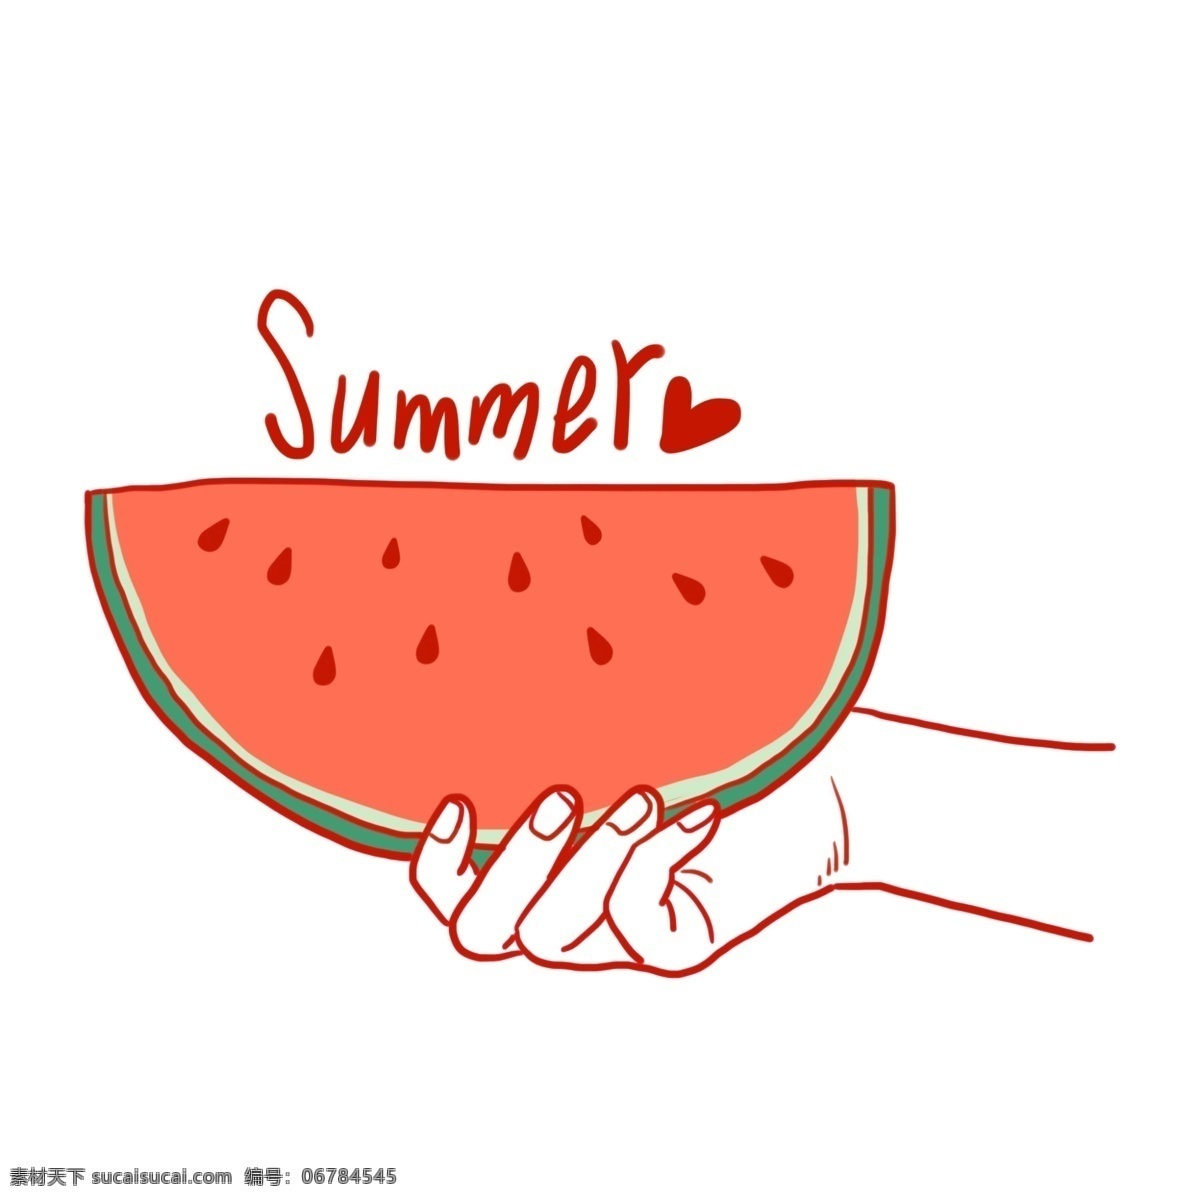 卡通 西瓜 免 抠 卡通西瓜 红色 西瓜子 夏天 夏季 水果 卡通水果 切片 切块 小暑 消暑 西瓜汁 手 卡通手